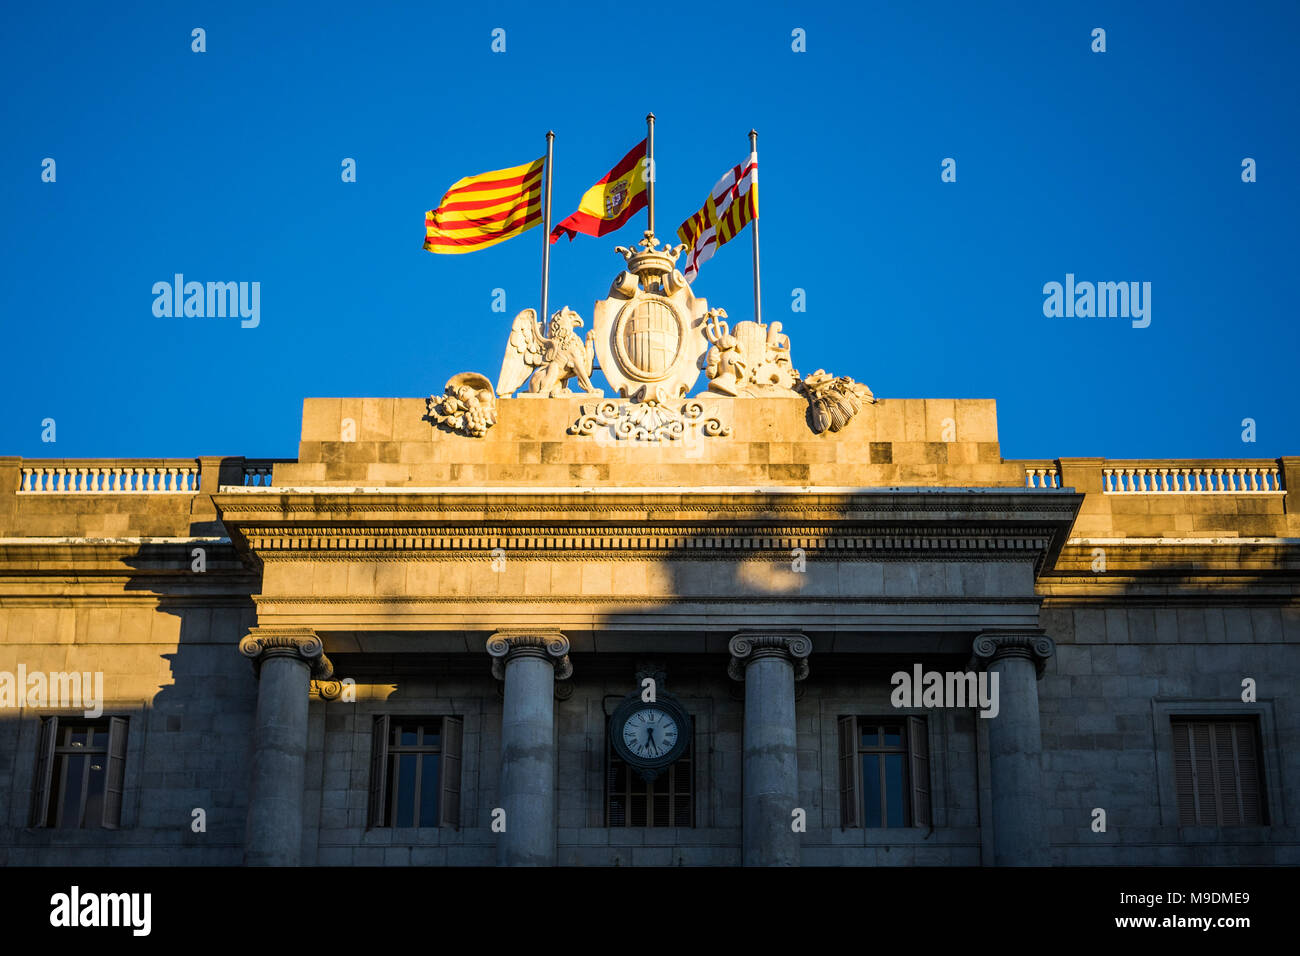 Casa de la Ciutat - il municipio di Barcellona, battenti bandiera della Catalogna, la bandiera spagnola e la bandiera della città di Barcellona. Foto Stock